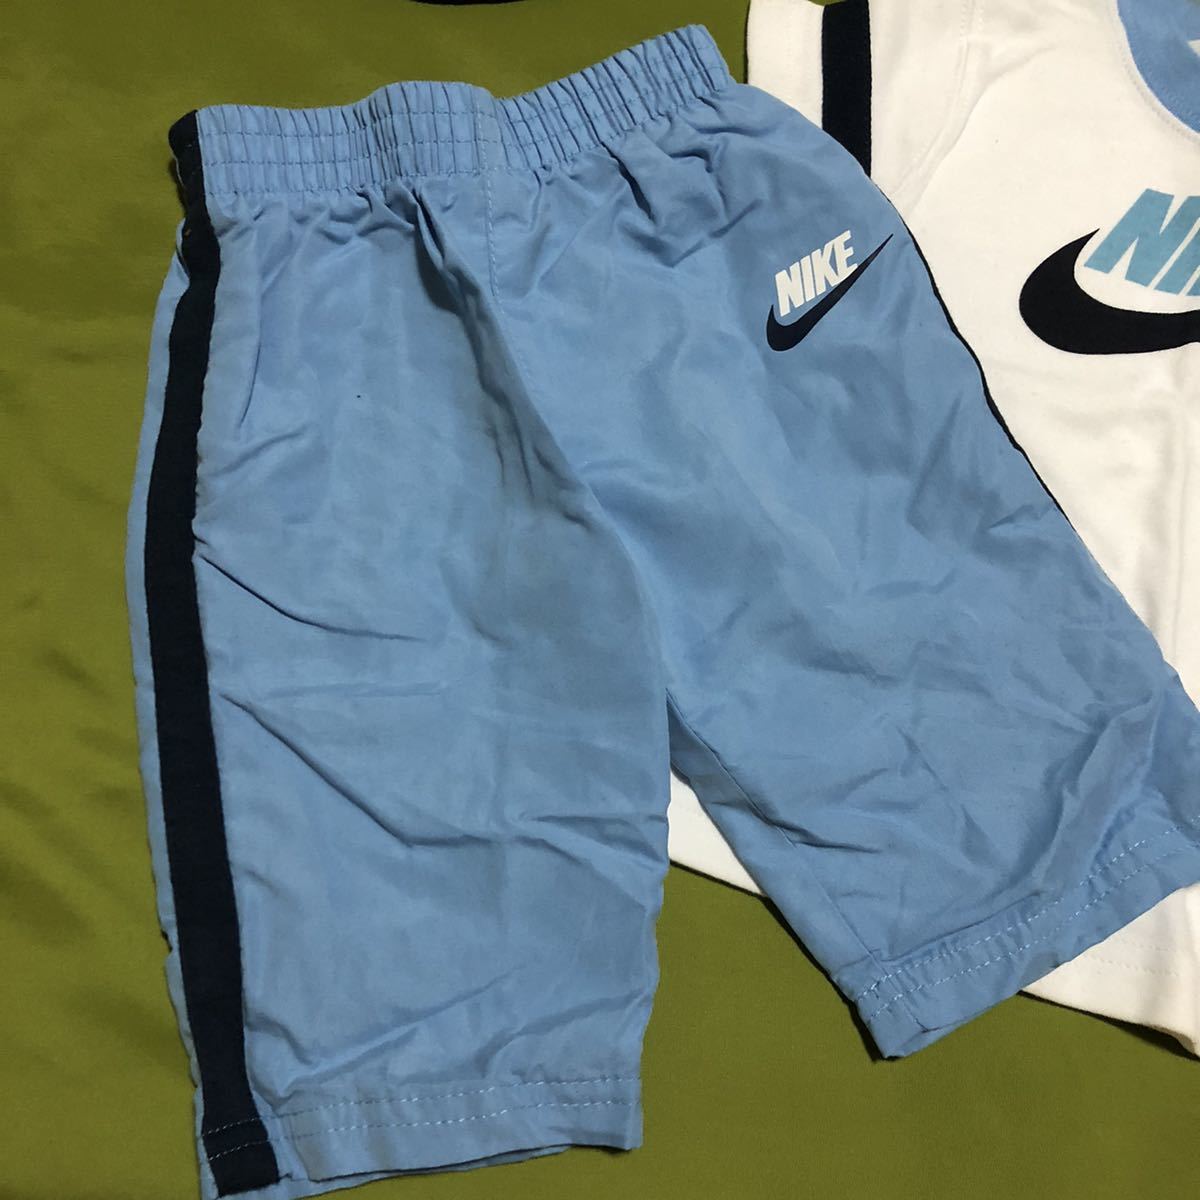  быстрое решение * Япония не поступление новый товар Nike *3 пункт выставить размер :0~6M белый × бледно-голубой 